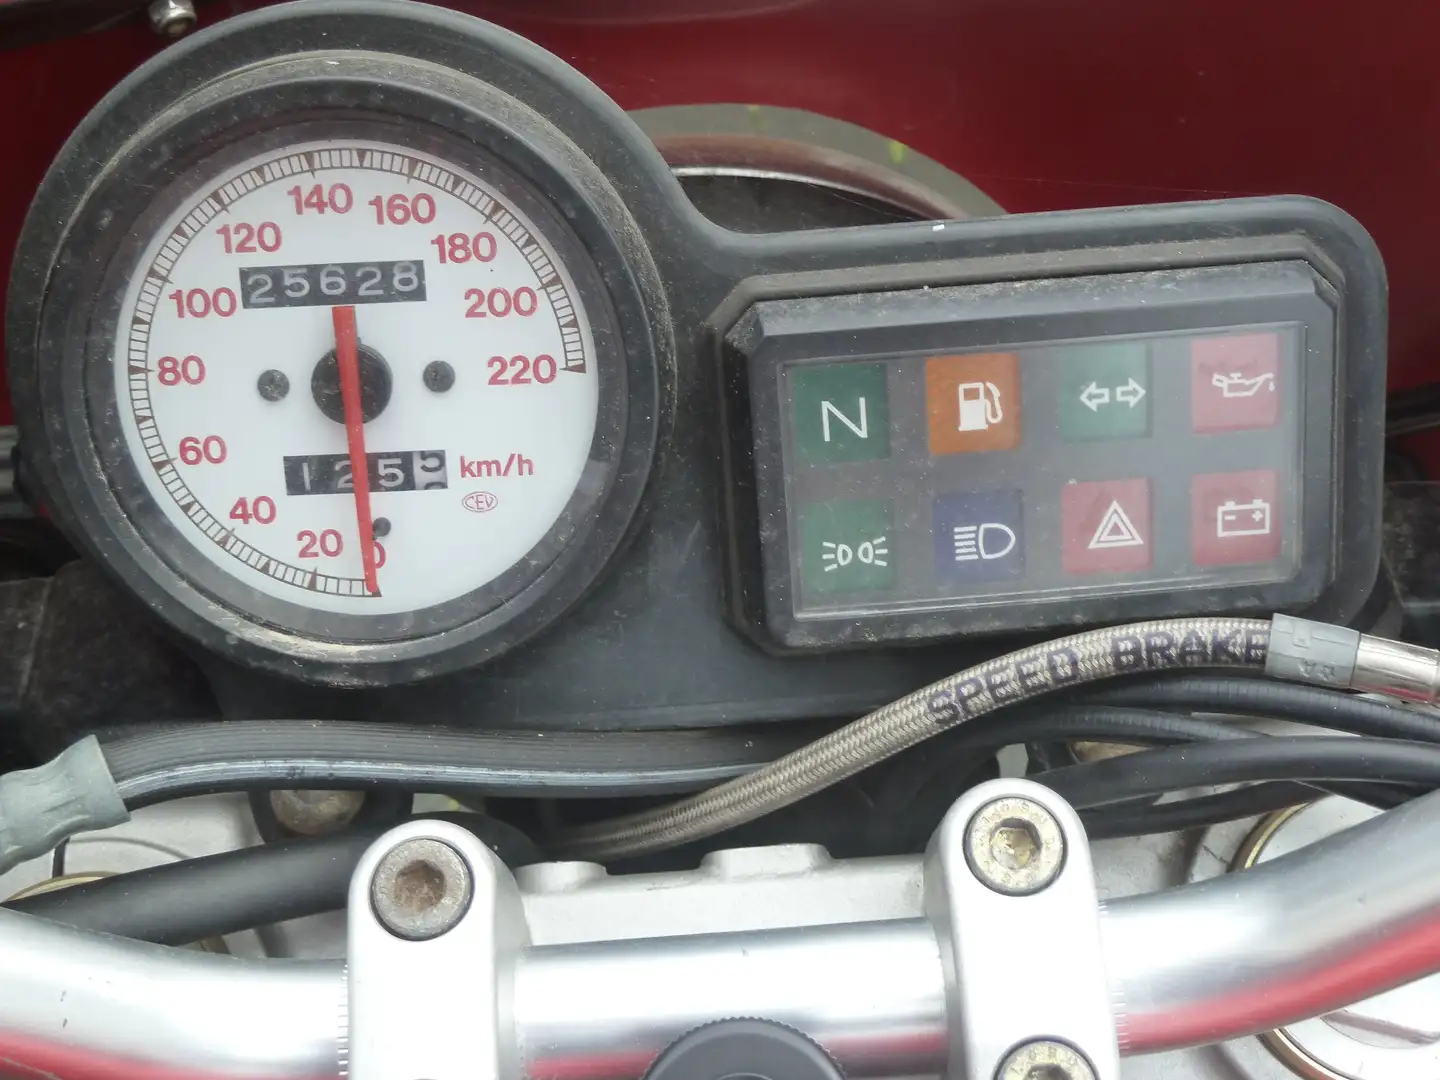 Ducati Monster 600 Rouge - 2